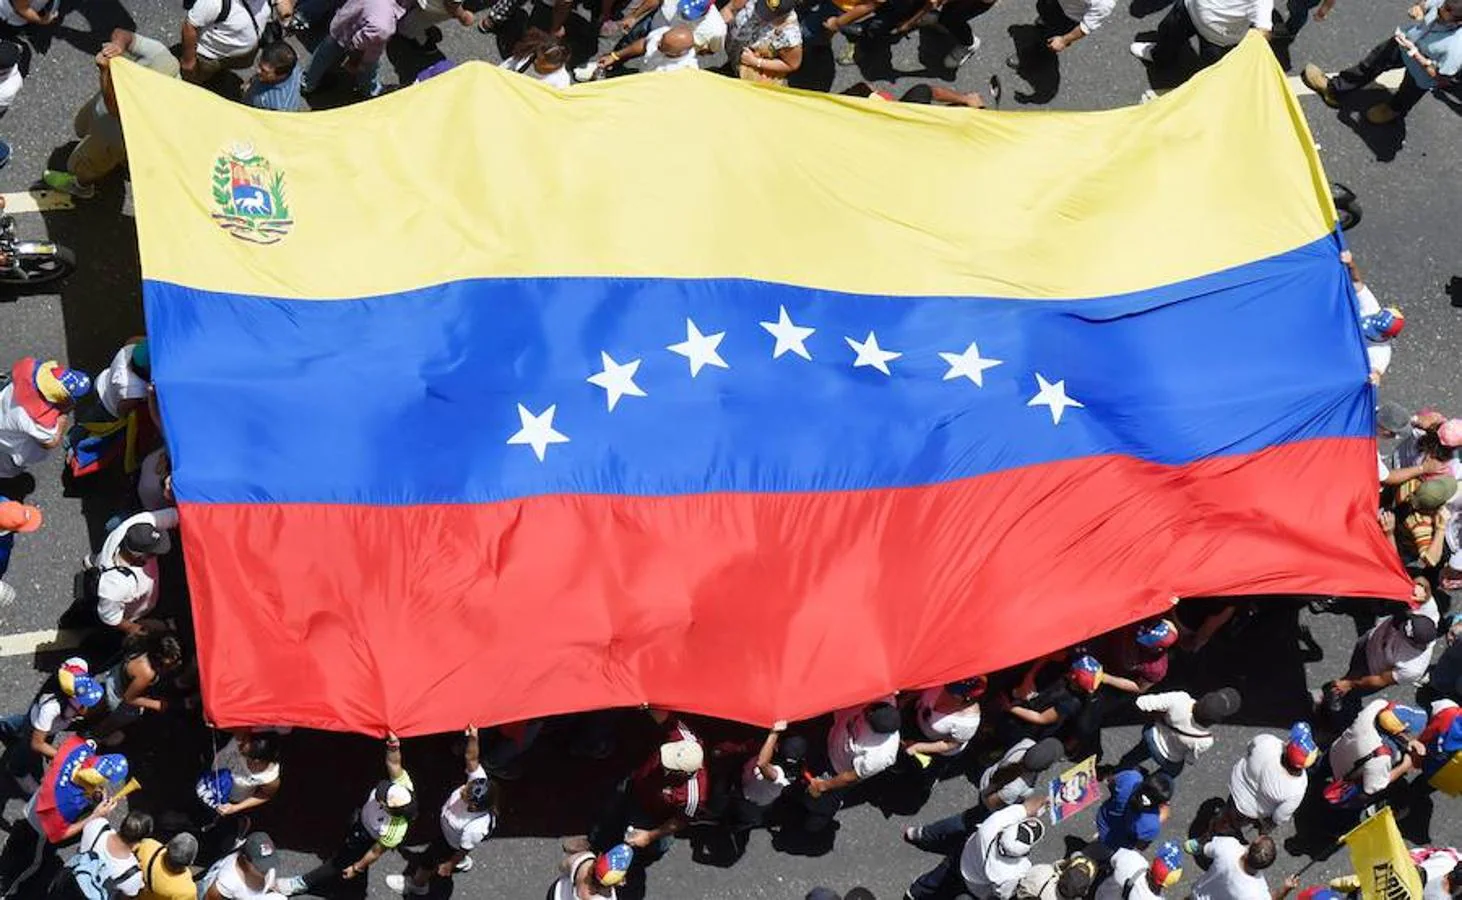 El Gobierno de Nicolás Maduro ha prohibido los vuelos privados y drones, por lo que resulta díficil conseguir imágenes aéreas de la manifestación